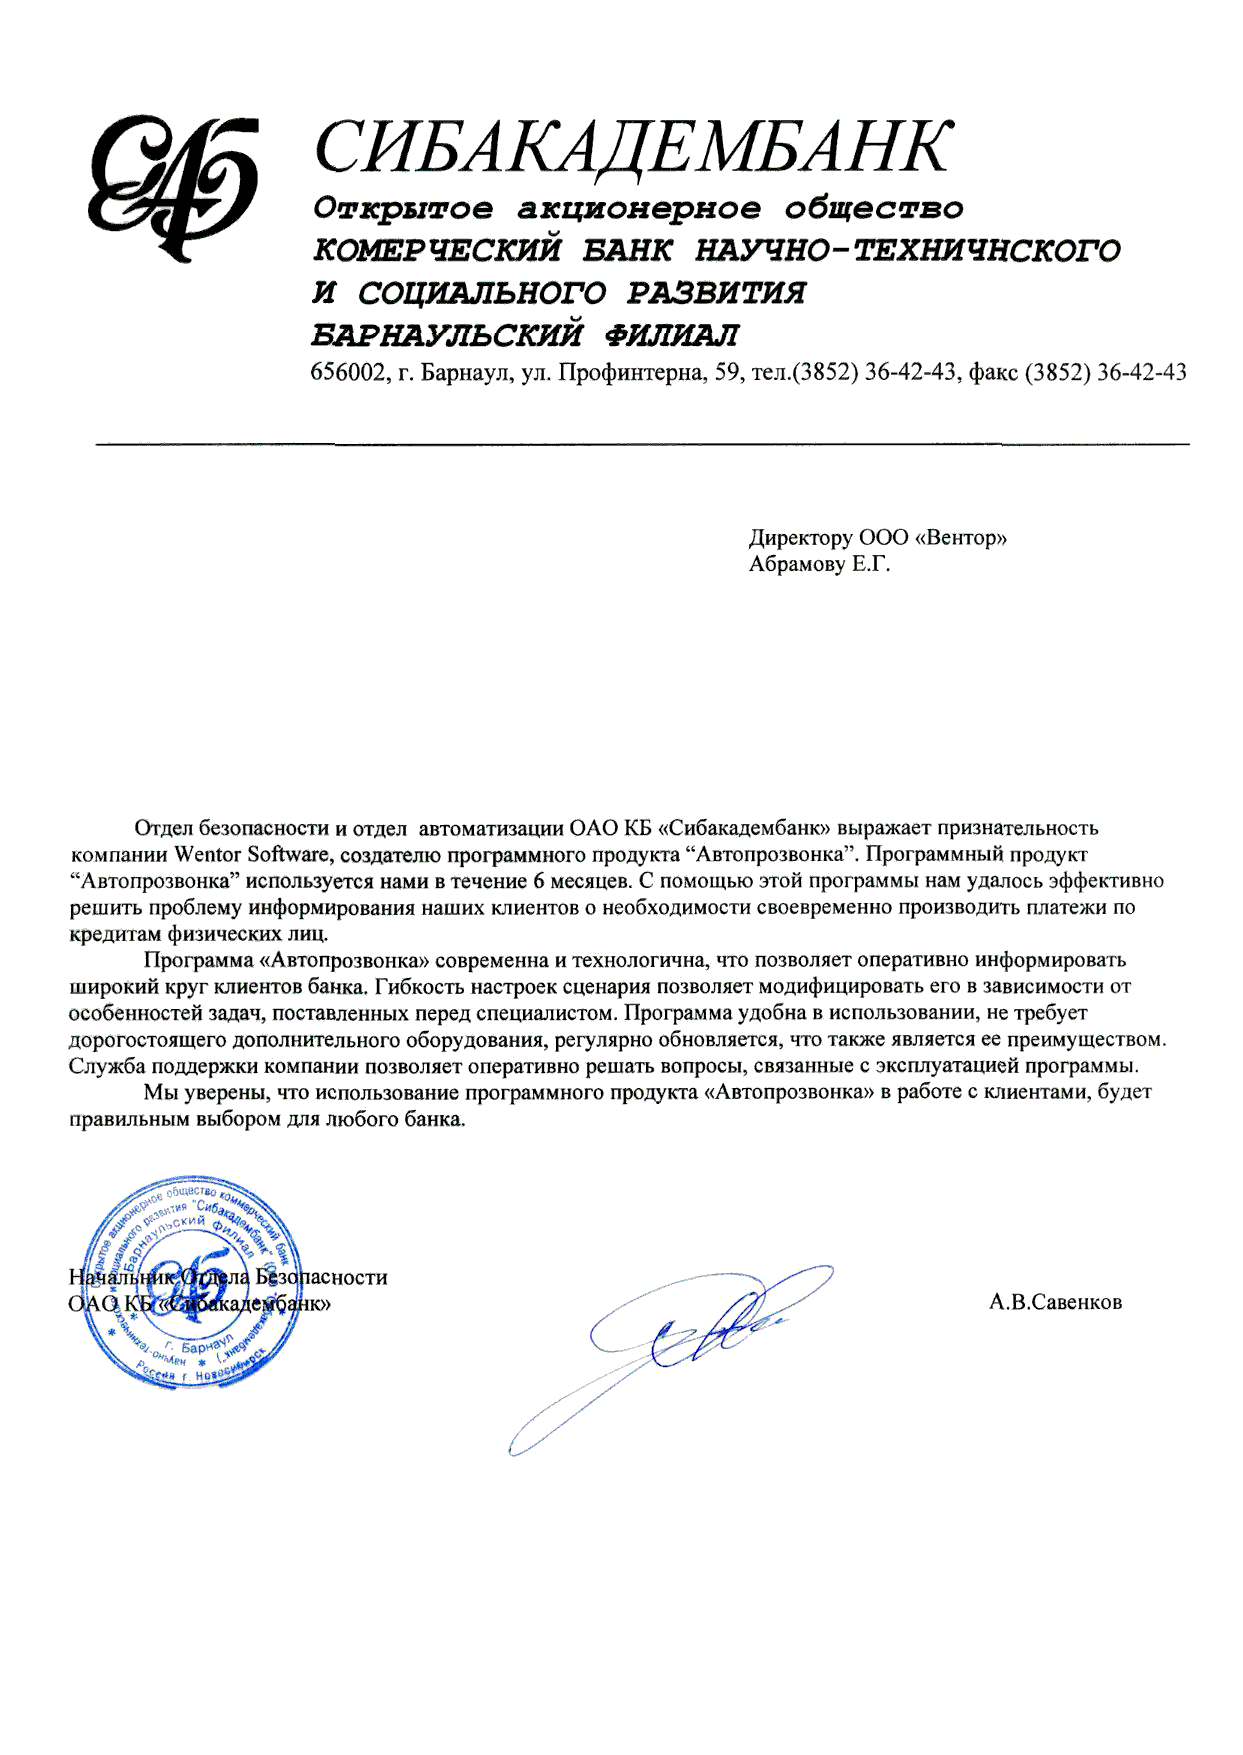 Благодарственное письмо отдела автоматизации ОАО КБ 'Сибакадембанк'